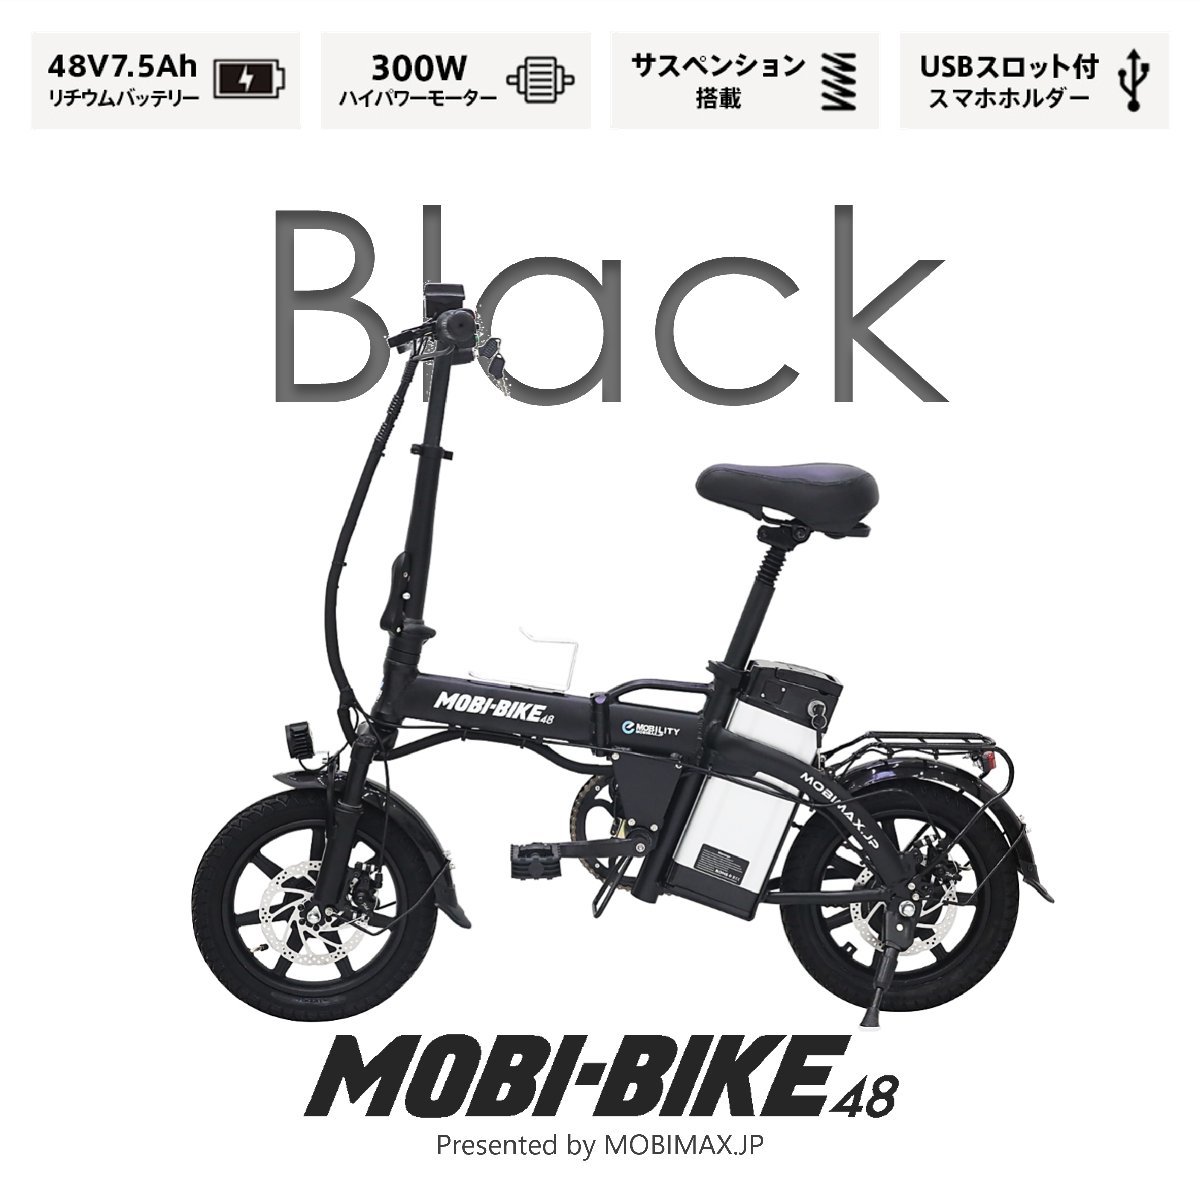 【新品】フル電動自転車 MOBI-BIKE48 アクセル付き モペット 折りたたみ自転車 ＜ブラック＞の返品方法を画像付きで解説！返品の条件や注意点なども